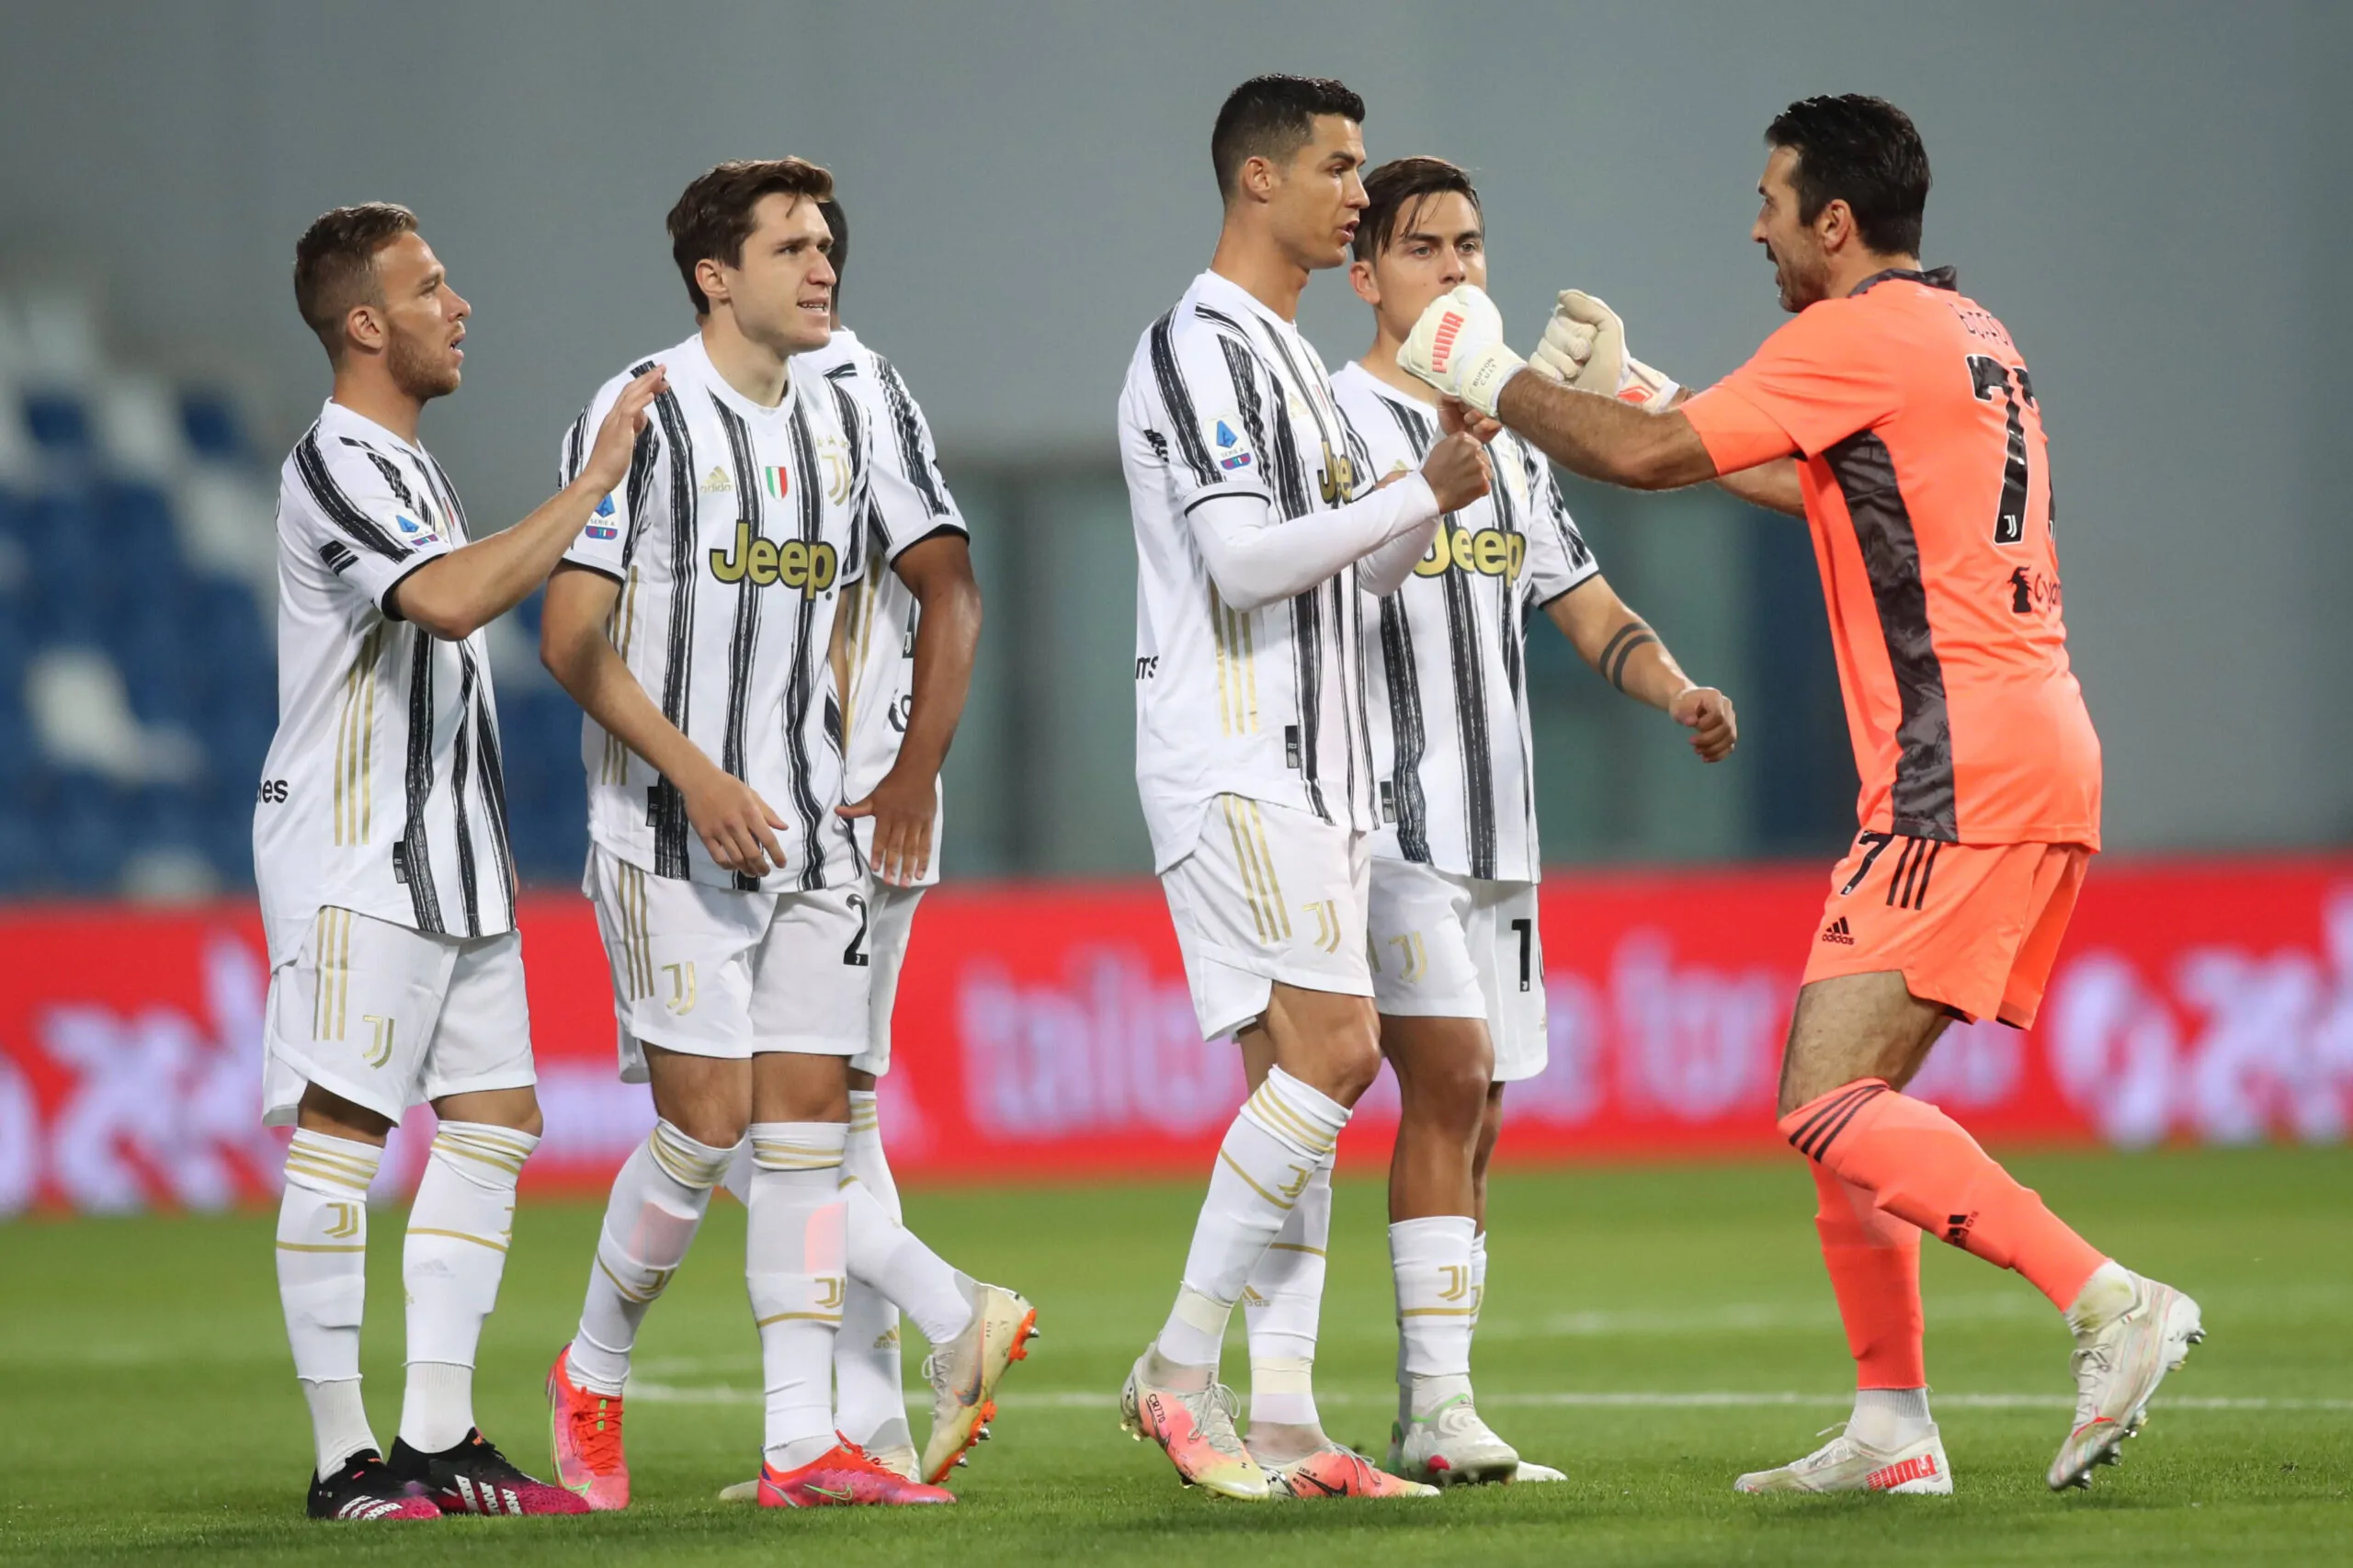 La rivelazione: “Ronaldo mi voleva alla Juve”, i dettagli